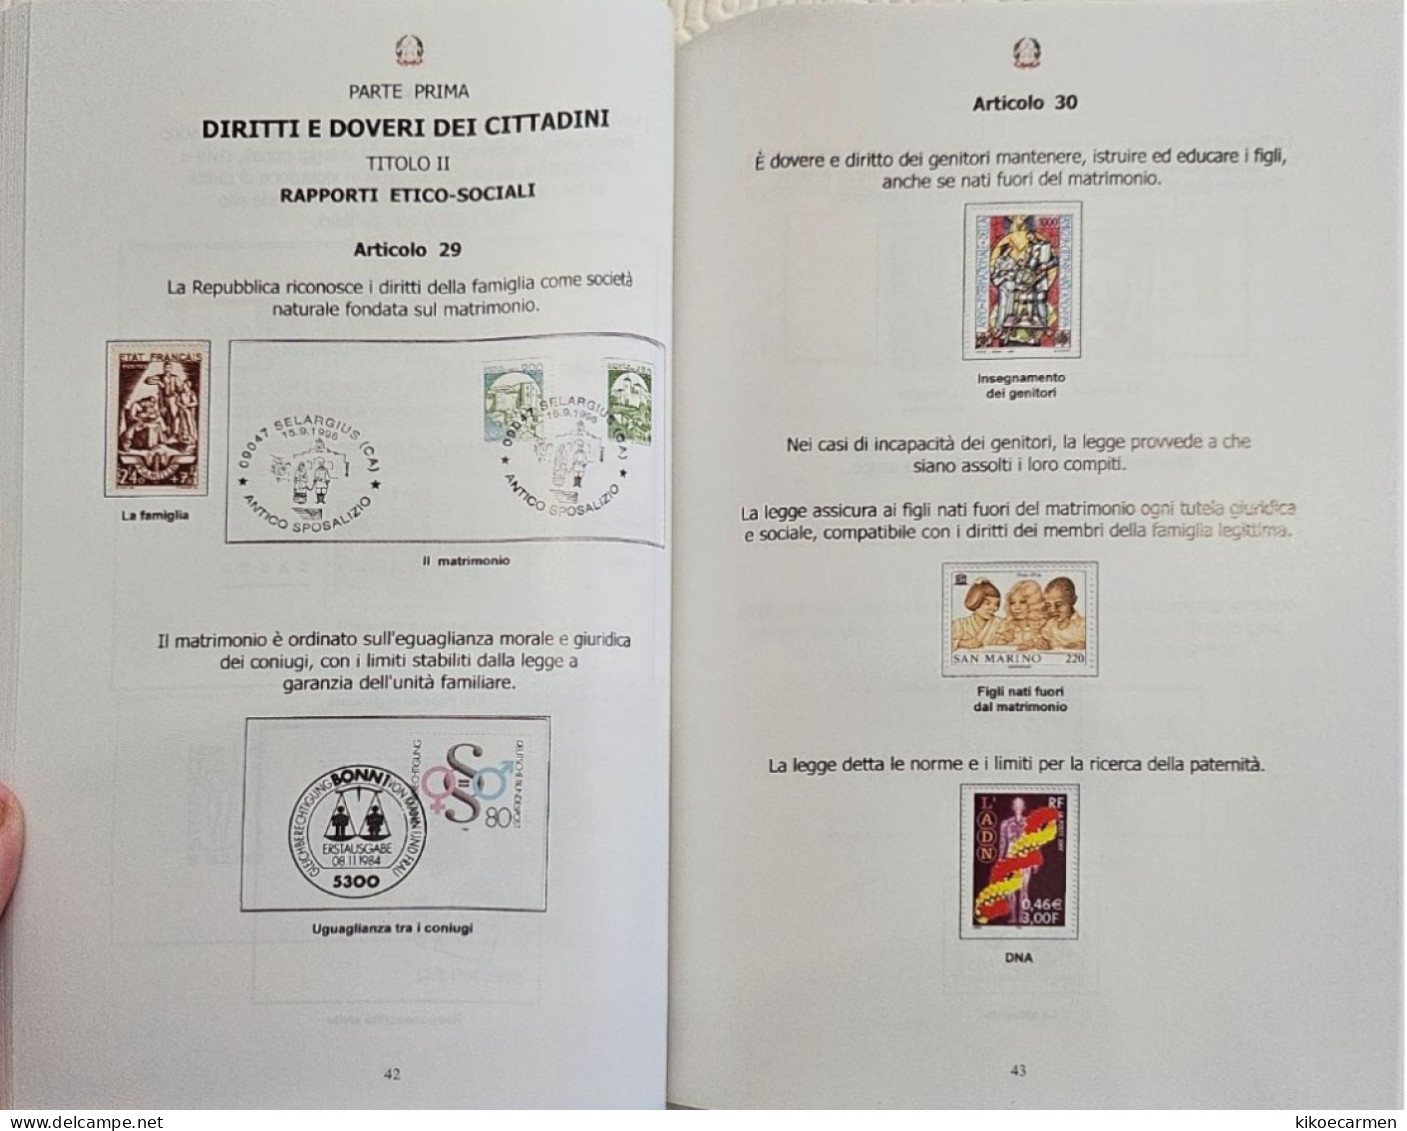 Costituzione Italiana Attraverso La Filatelia CIFT Vastophil 2014 LAW Thematic Philately Book 158 Pages Coloured - Motive